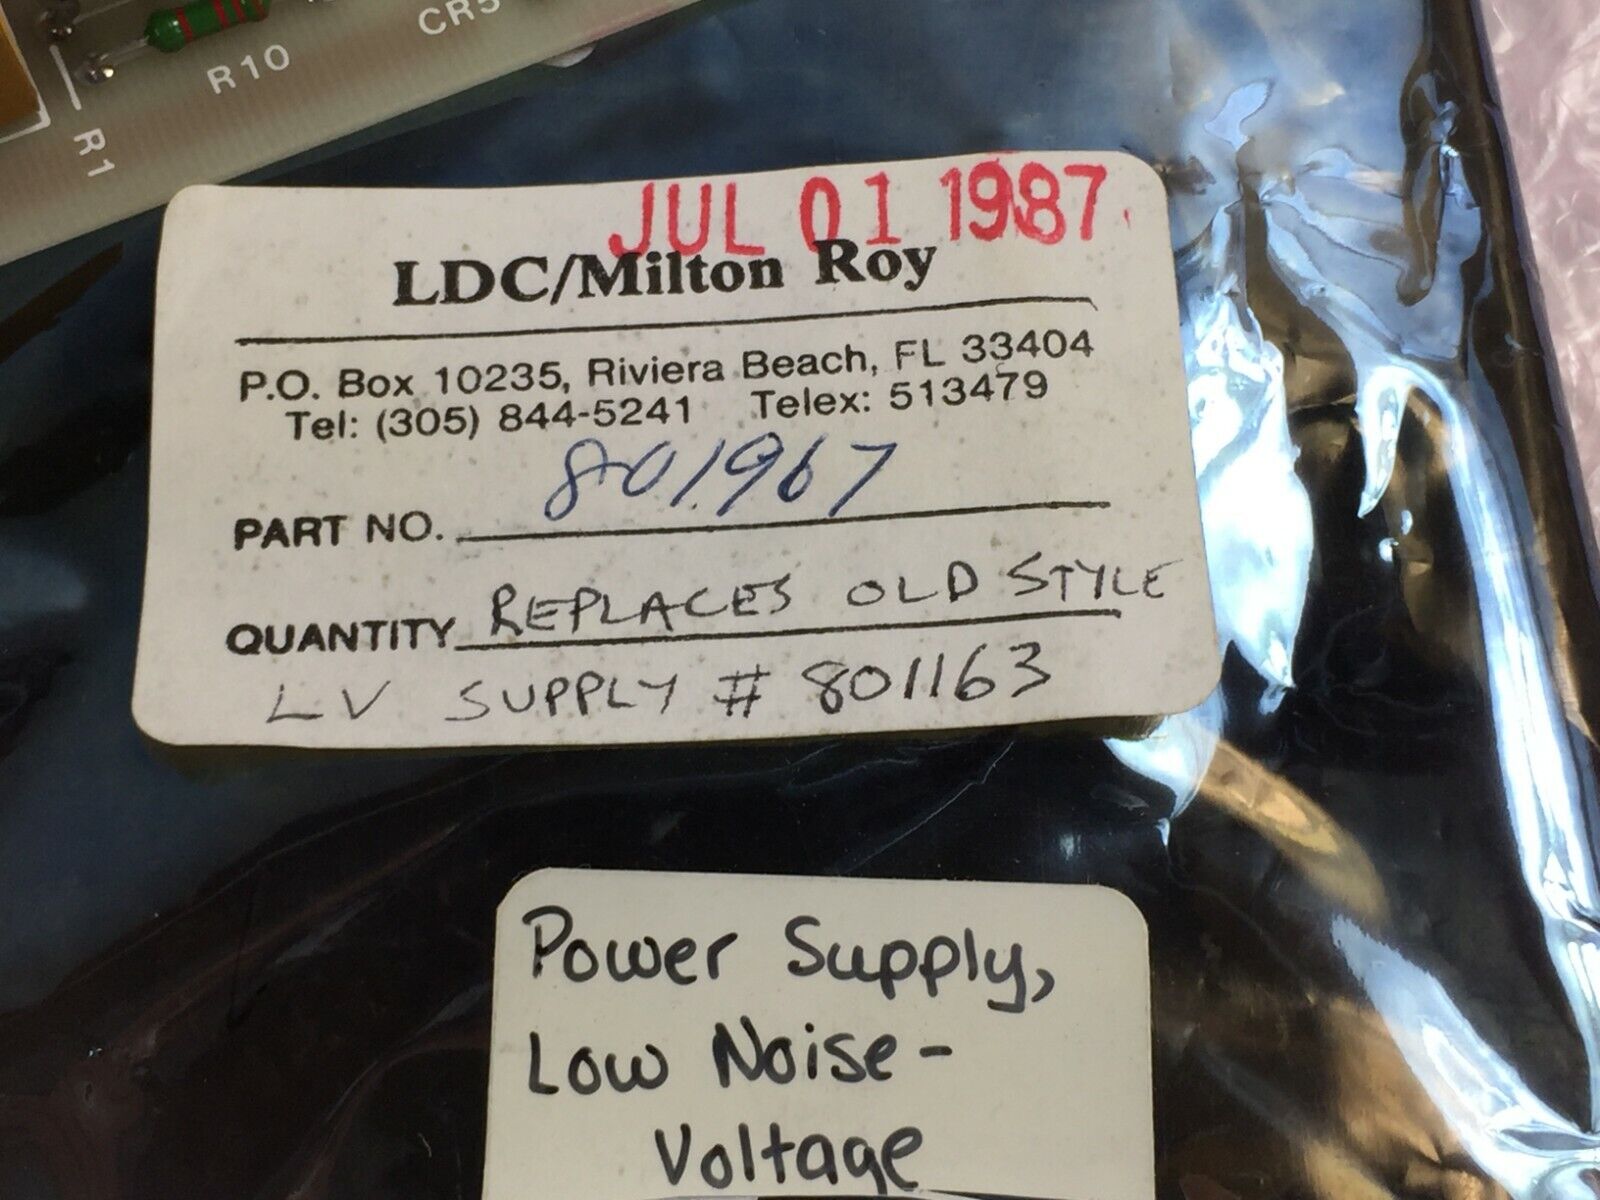 LDC / Milton Roy Part# 801967 Power Supply Low Noise Voltage